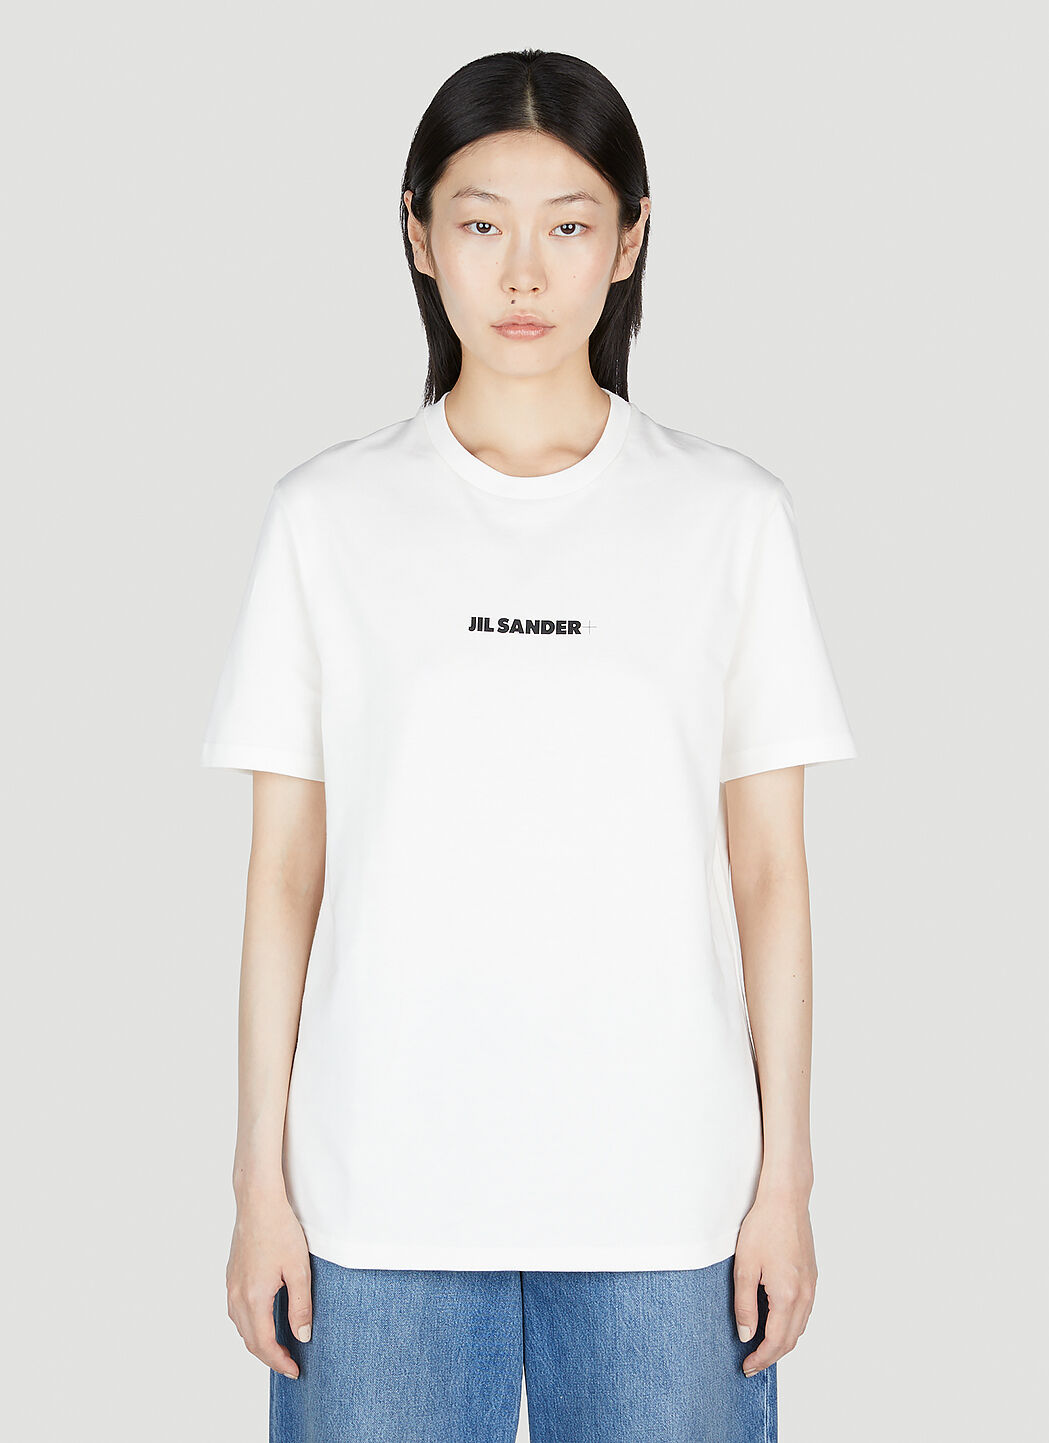 Jil Sander+ Logo T-Shirt Grey jsp0251008